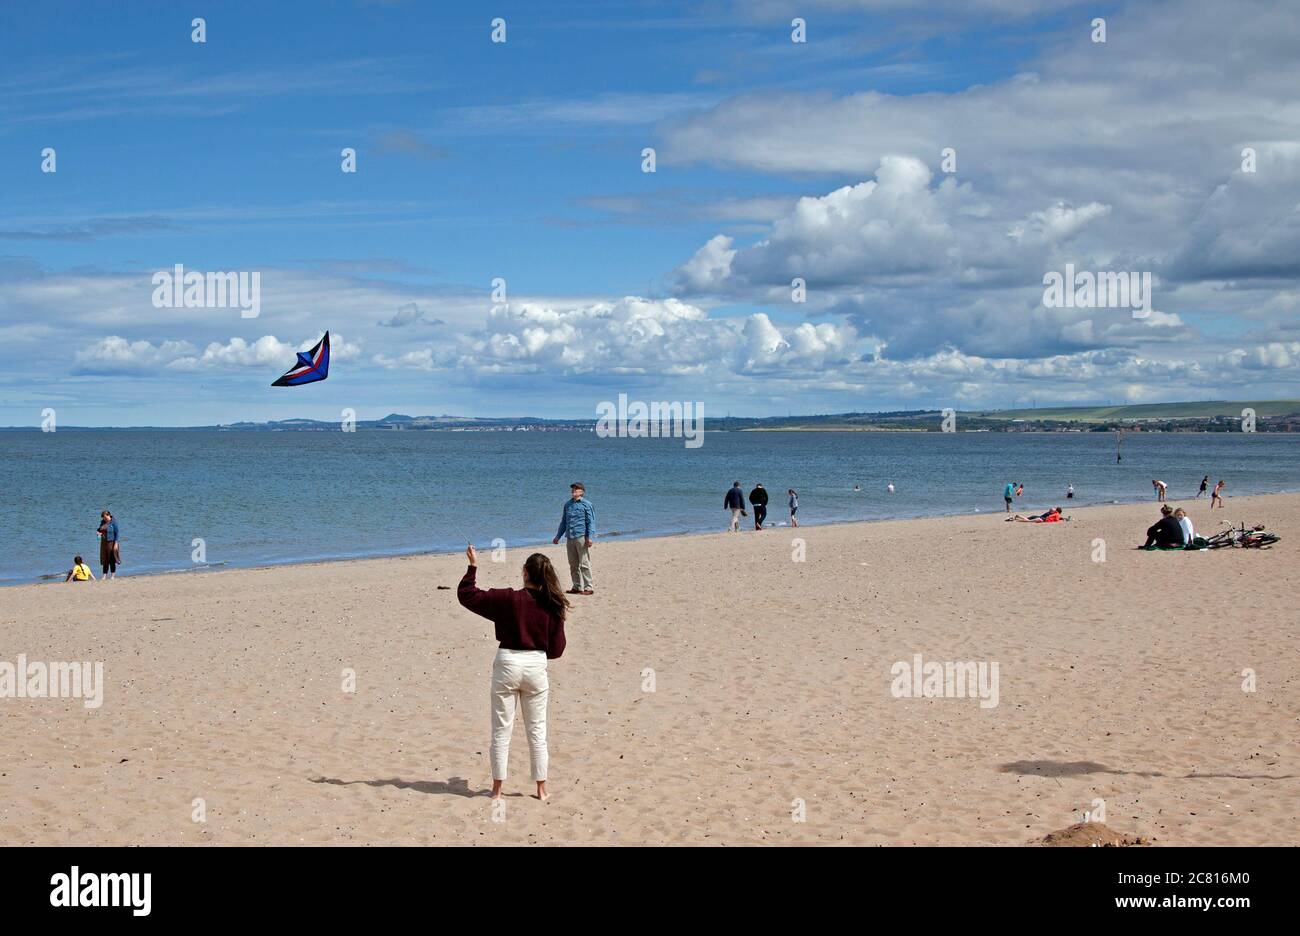 Portobello, Édimbourg, Écosse, Royaume-Uni. 20 juillet 2020. Cette jeune femme s'est amusée à voler son cerf-volant sur une plage très calme pour la mi-juillet. Soleil et cumulus avec des conditions venteuses. Vent de l'ouest 23 km/h rafales de 37 km/h température de 17 degrés. Banque D'Images